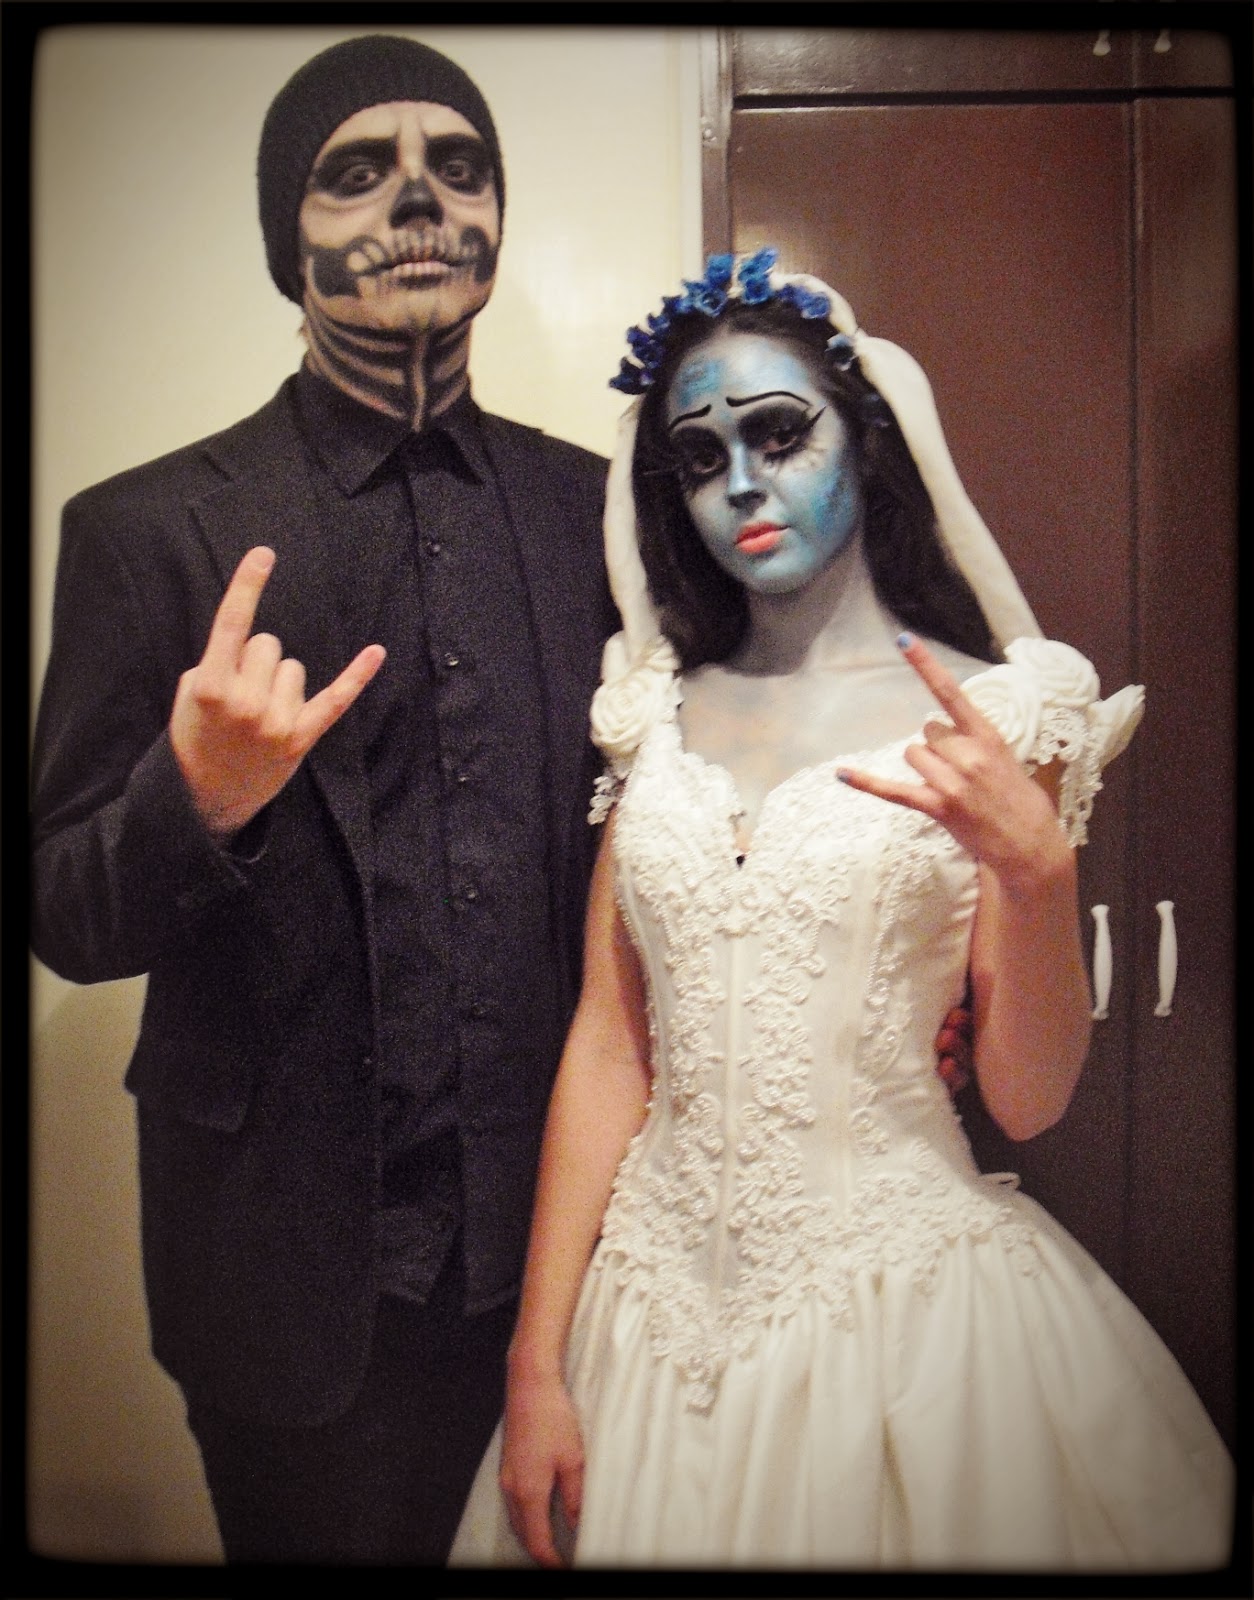 Corpse Bride/Halloween look.